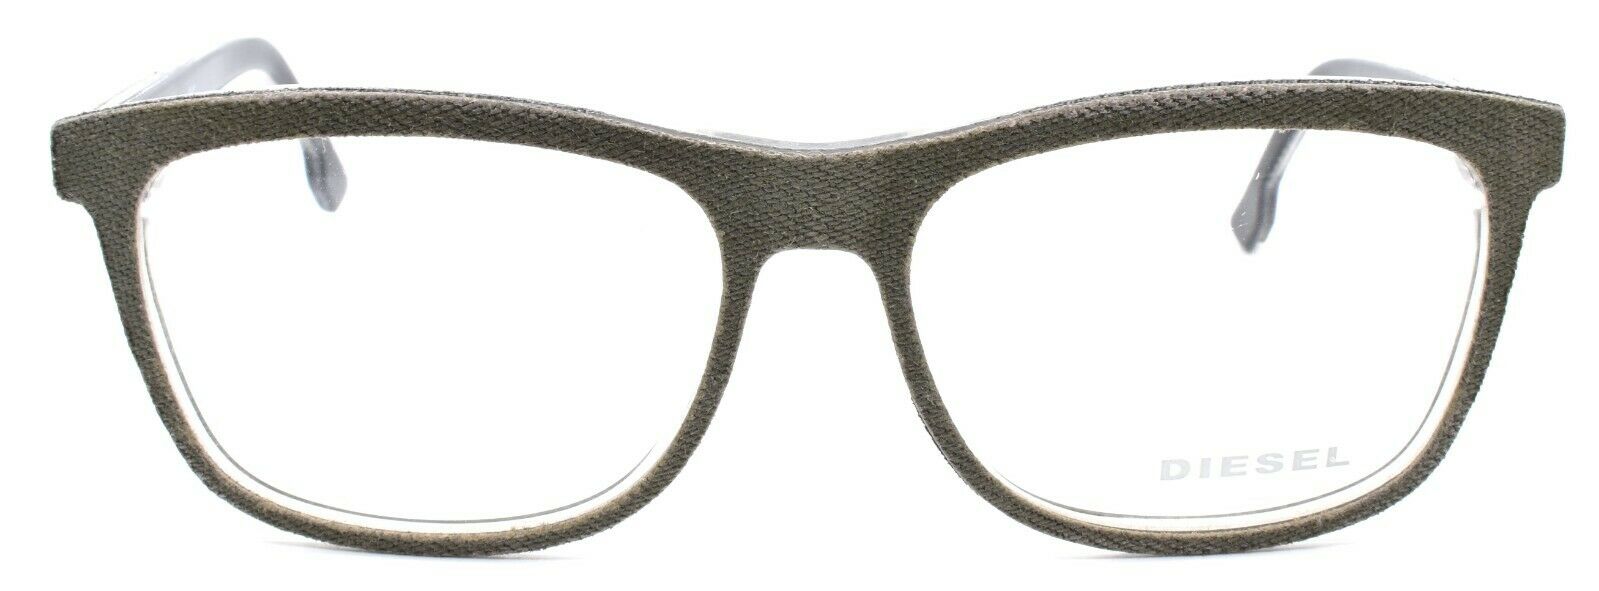 2-Diesel DL5191 098 Men's Eyeglasses Frames 54-15-145 Olive Denim-664689764082-IKSpecs